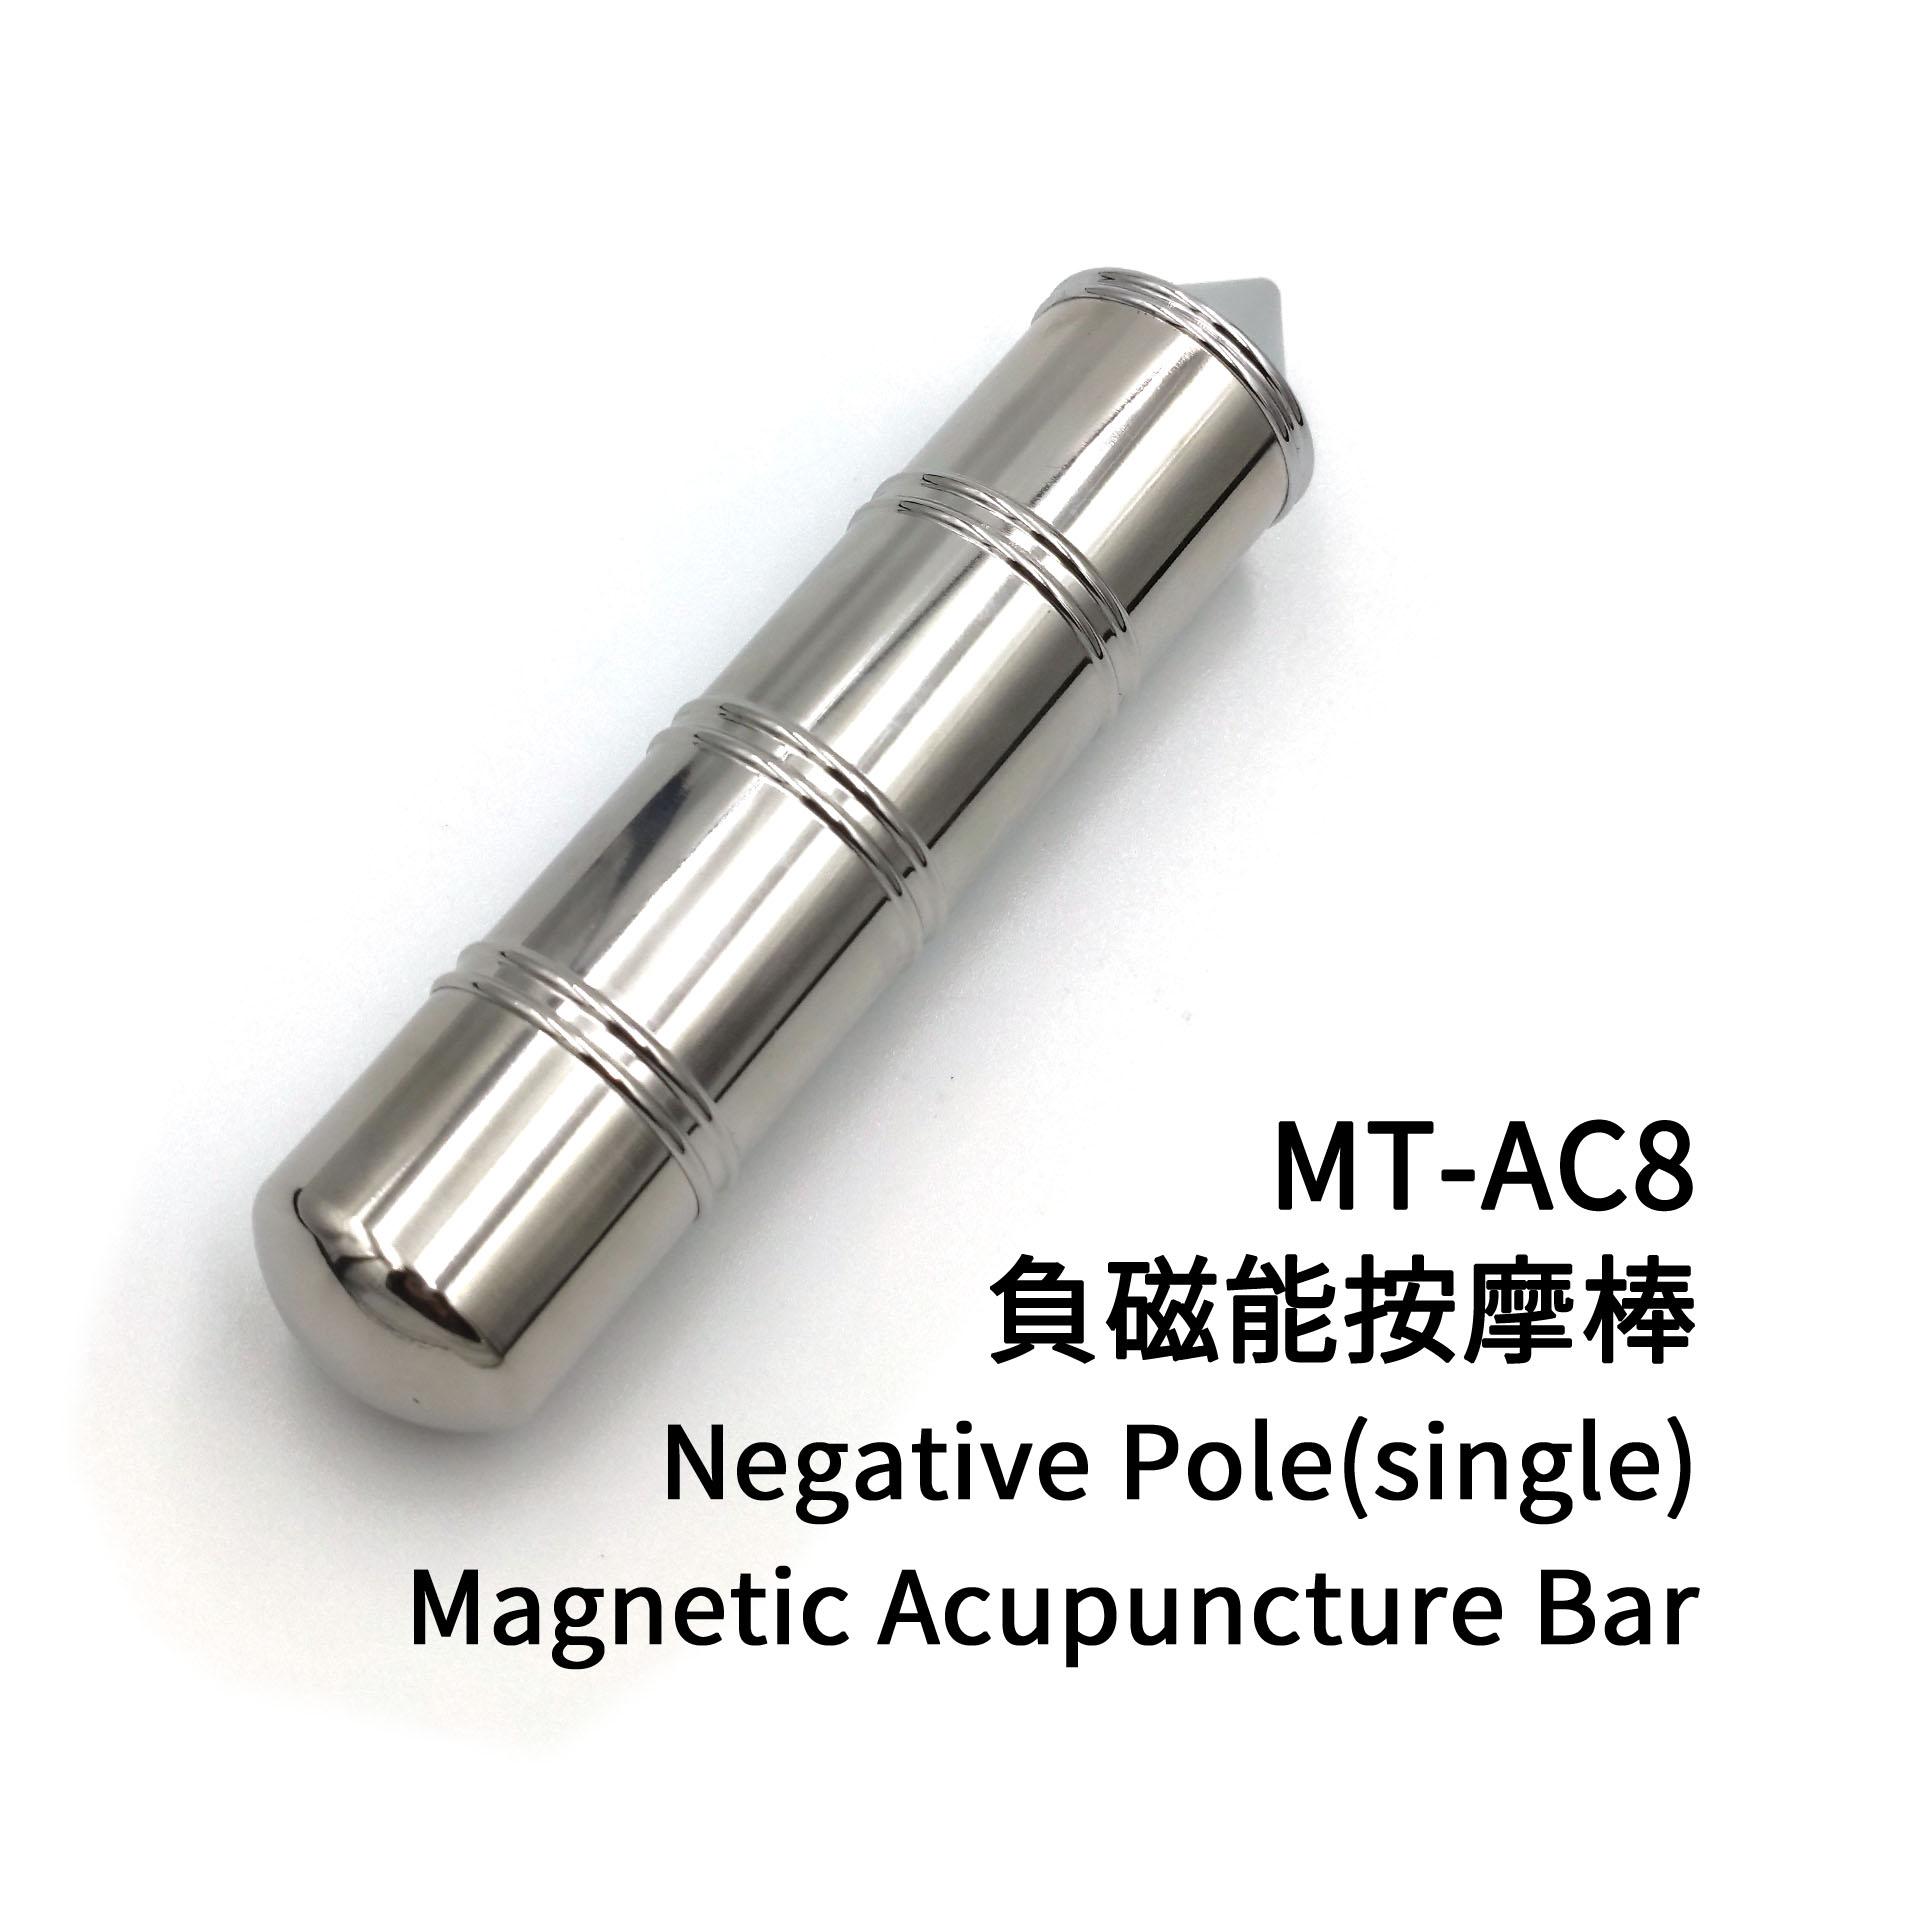 眼用磁療針-凹(塑鋼款) MT-AC4B